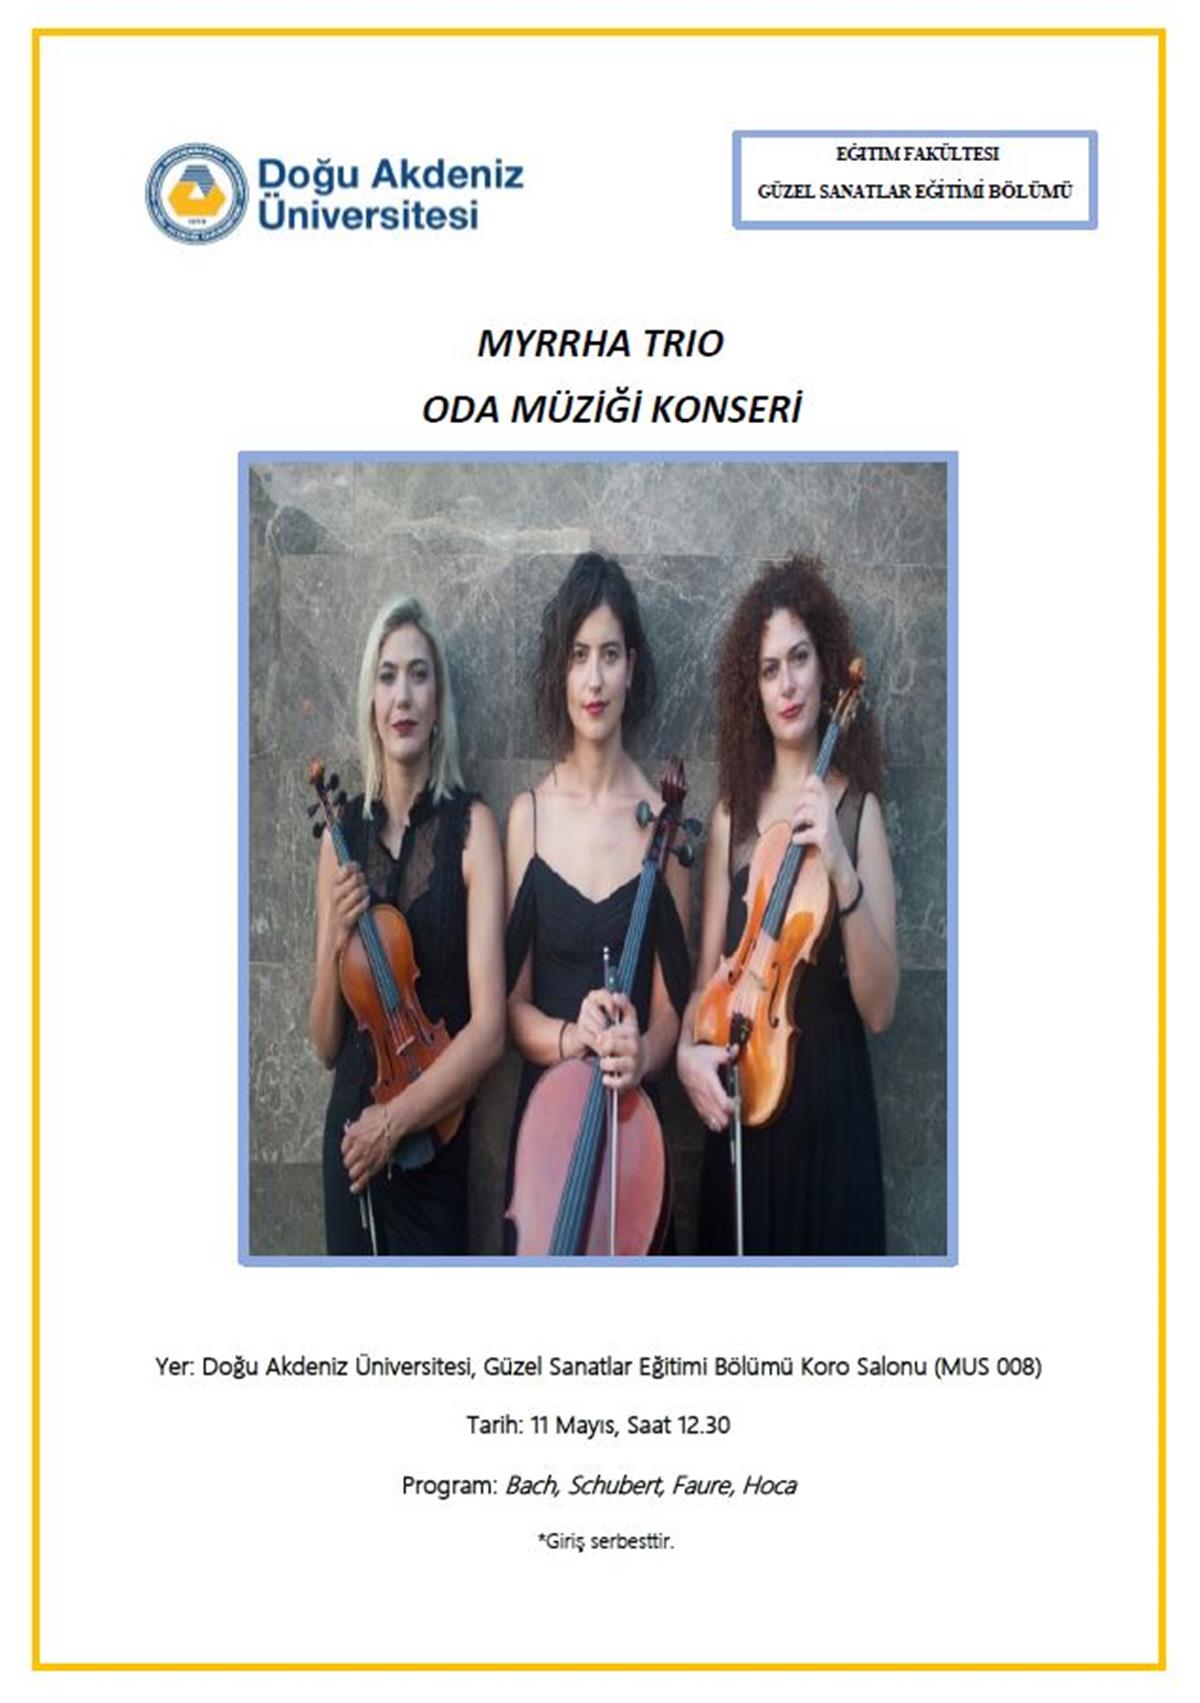 Myrrha trio